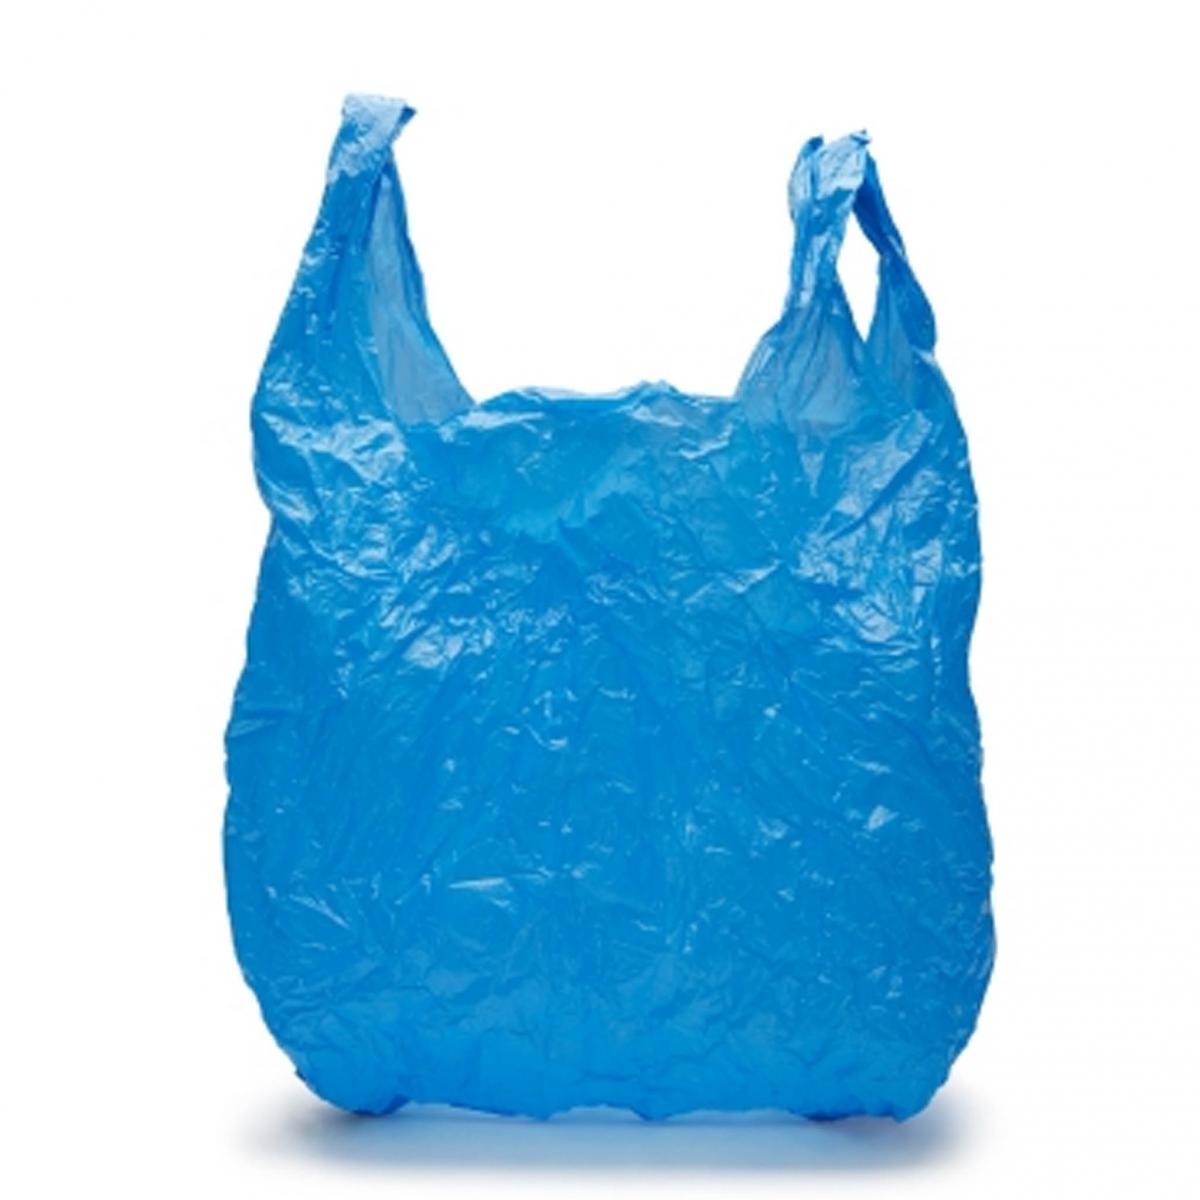 melocotón comentarista dedo Datos curiosos sobre las bolsas de plástico